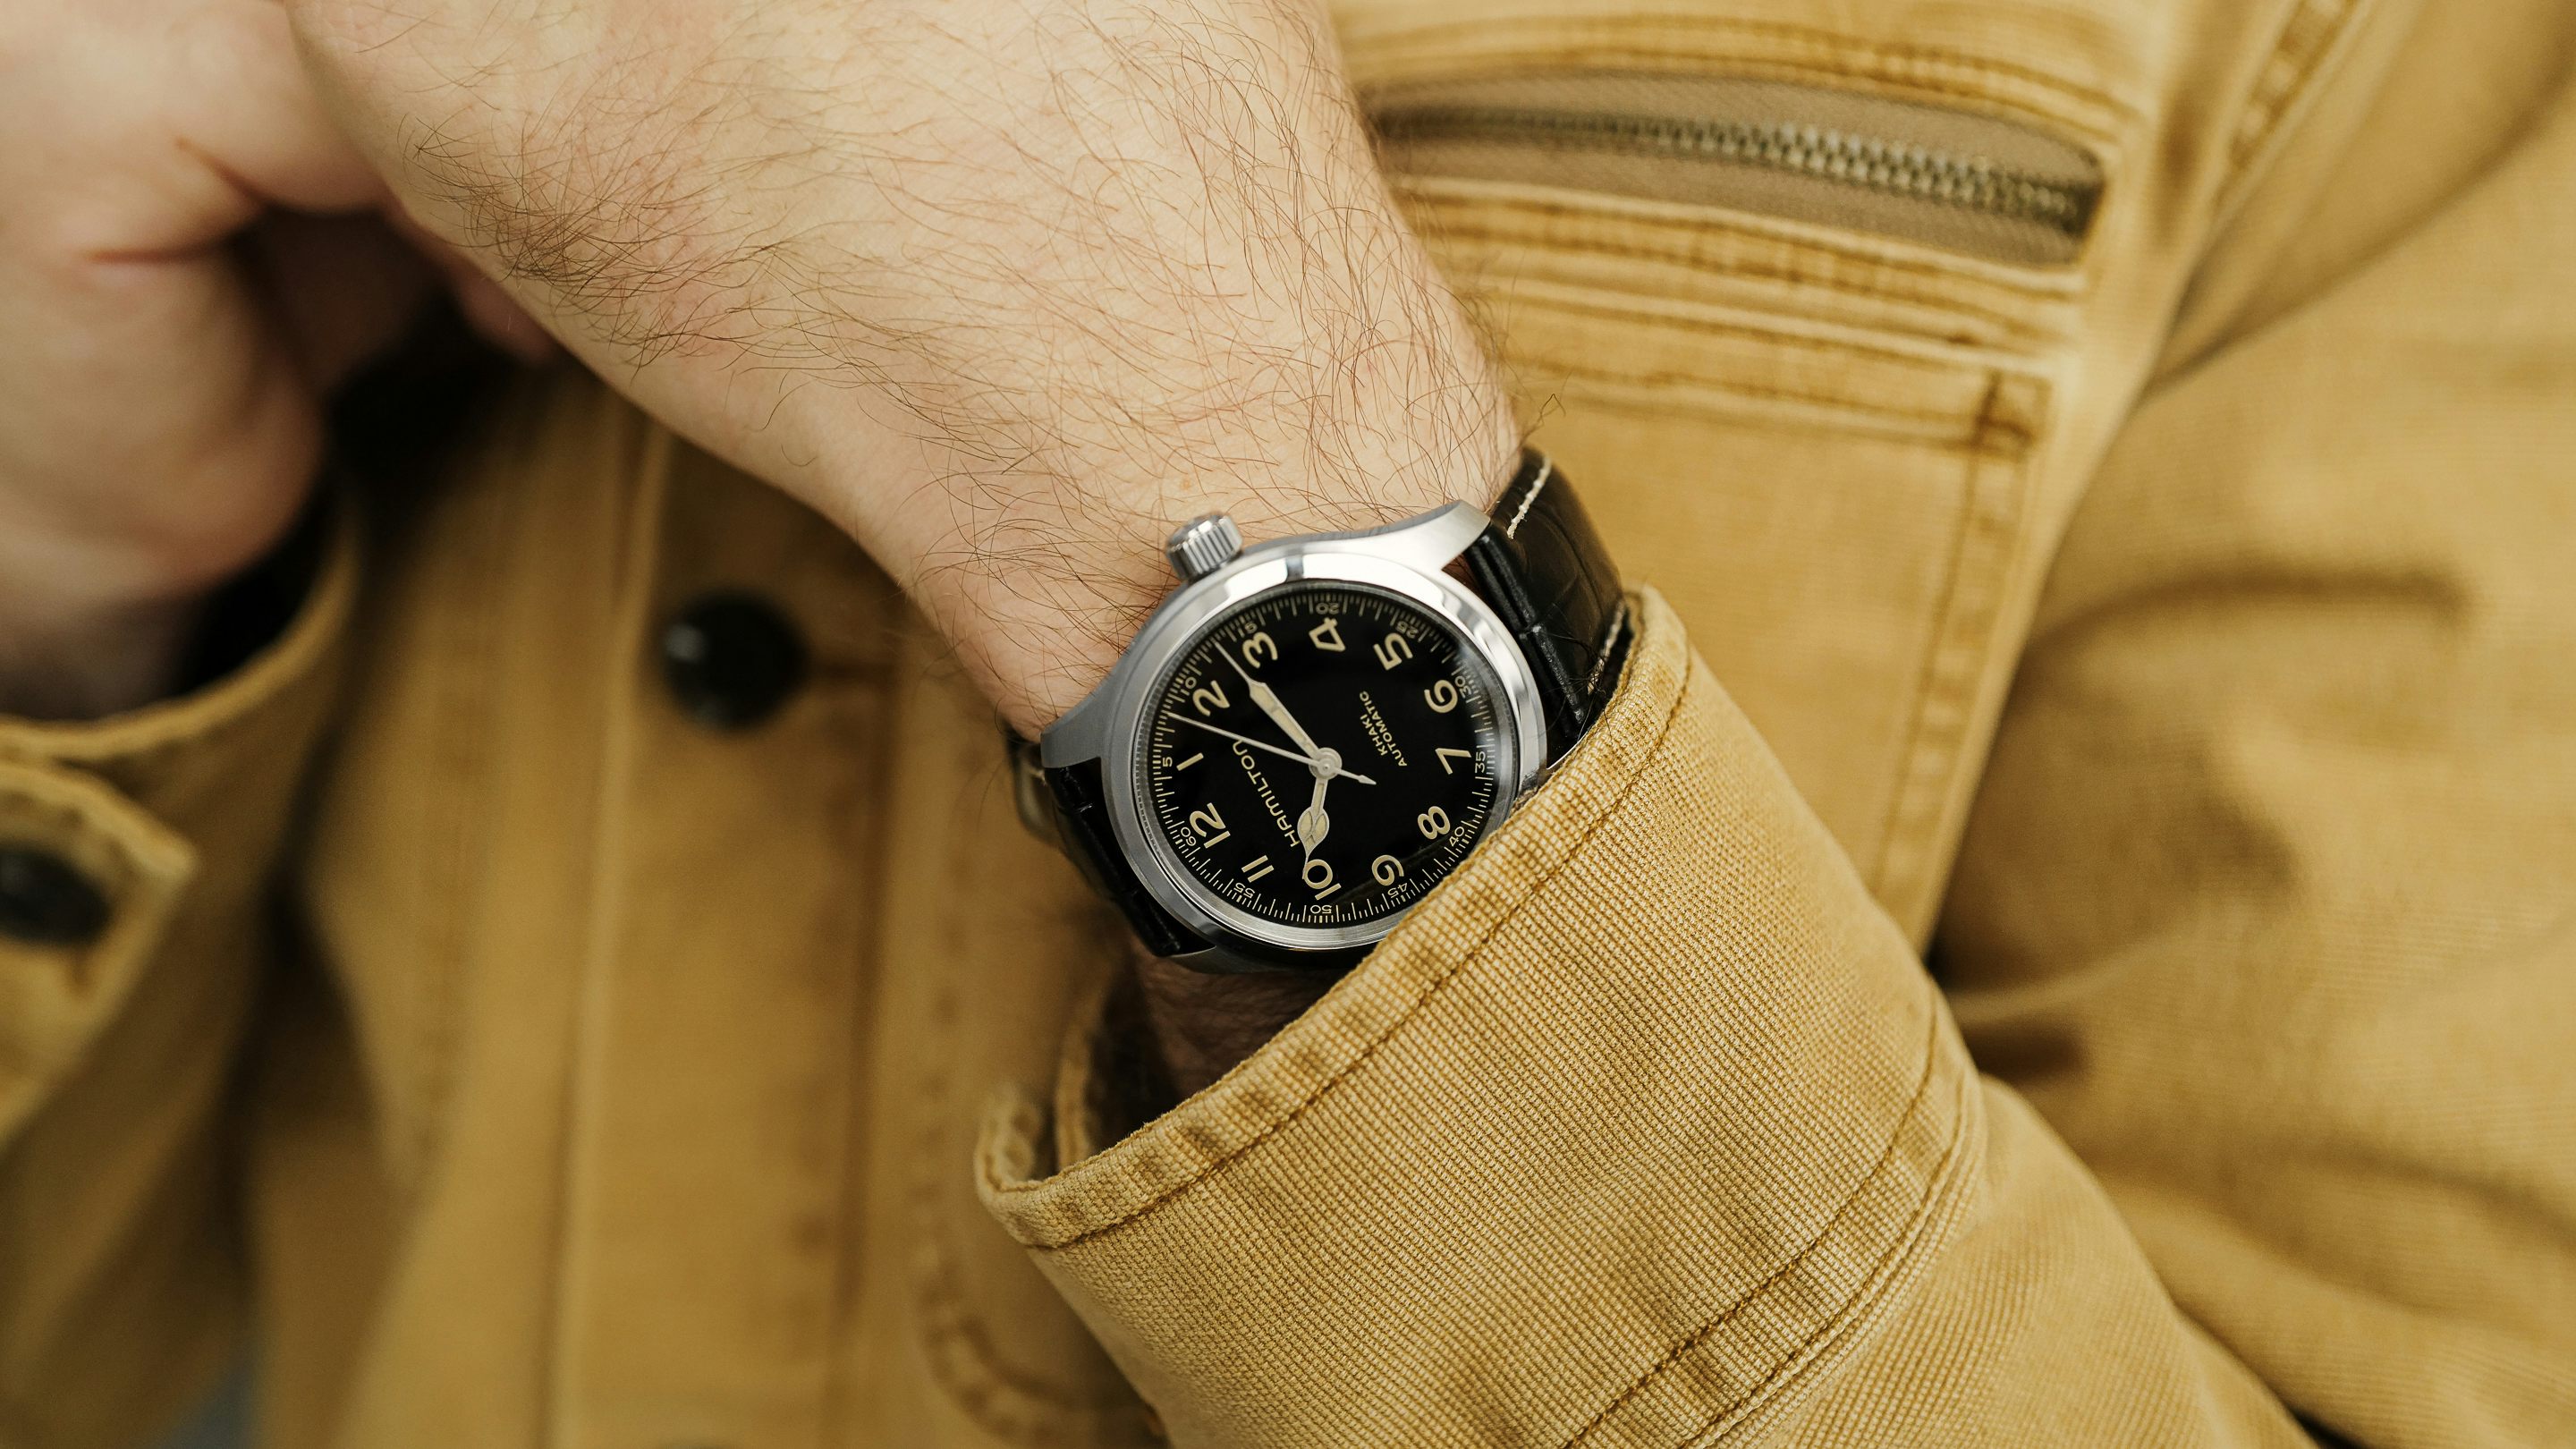 Bạn muốn sở hữu một chiếc đồng hồ tuyệt vời với giá dưới $1,000? Đừng bỏ qua đánh giá đồng hồ Hamilton Murph 38 của chúng tôi. Với thiết kế hiện đại, độc đáo và màu sắc Nato chữ số màu đỏ nổi bật trên nền xanh, chiếc đồng hồ này hoàn toàn đáng để bạn lựa chọn.